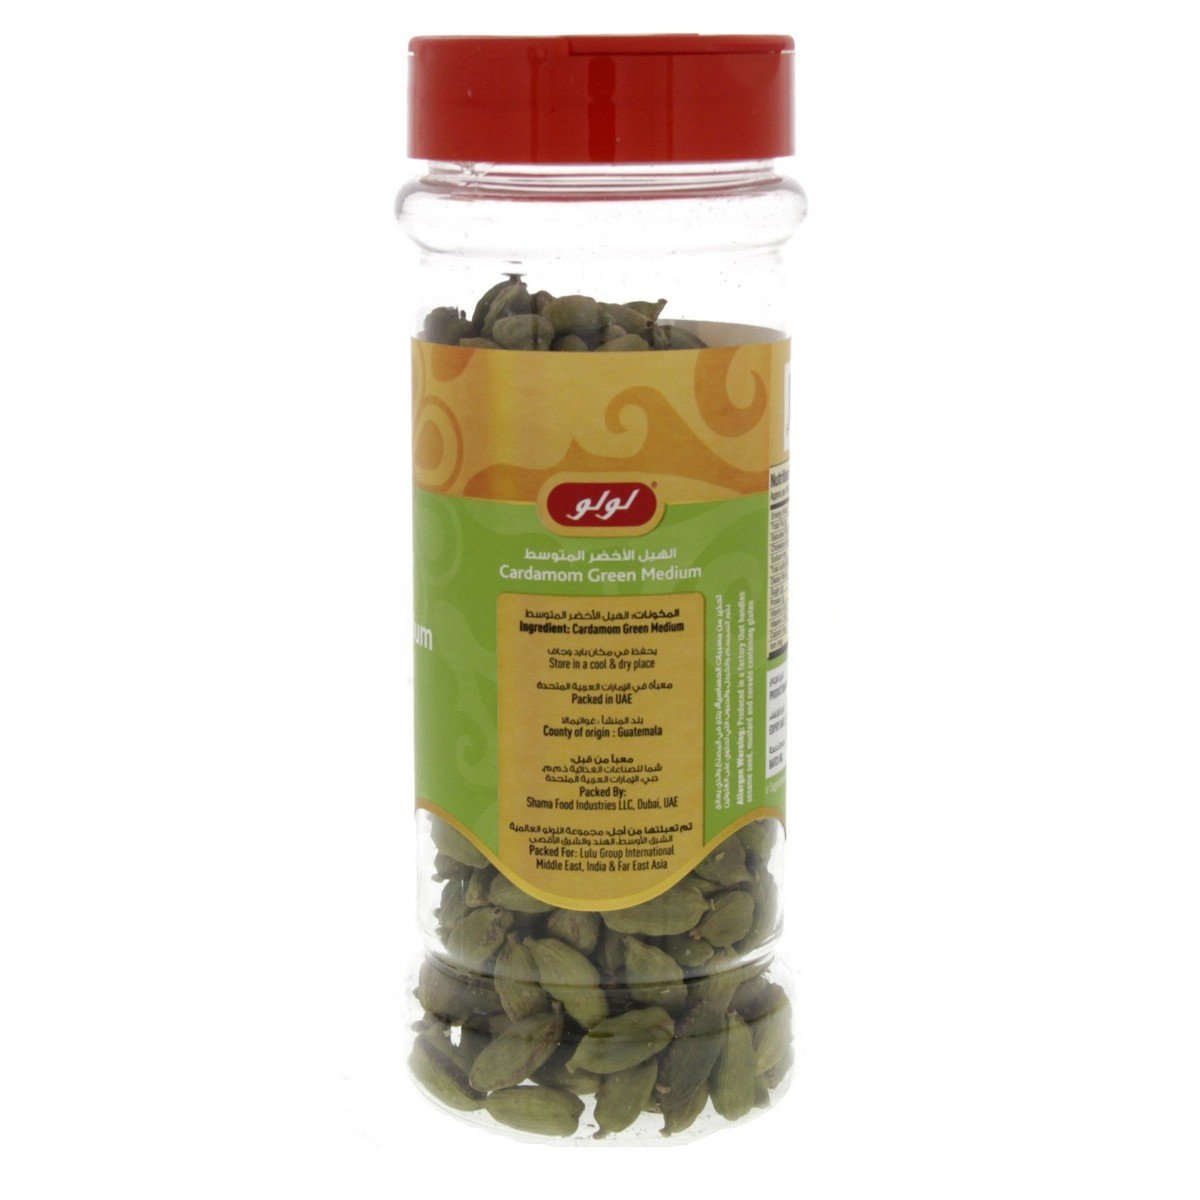 LuLu Cardamom Green Medium 100 g